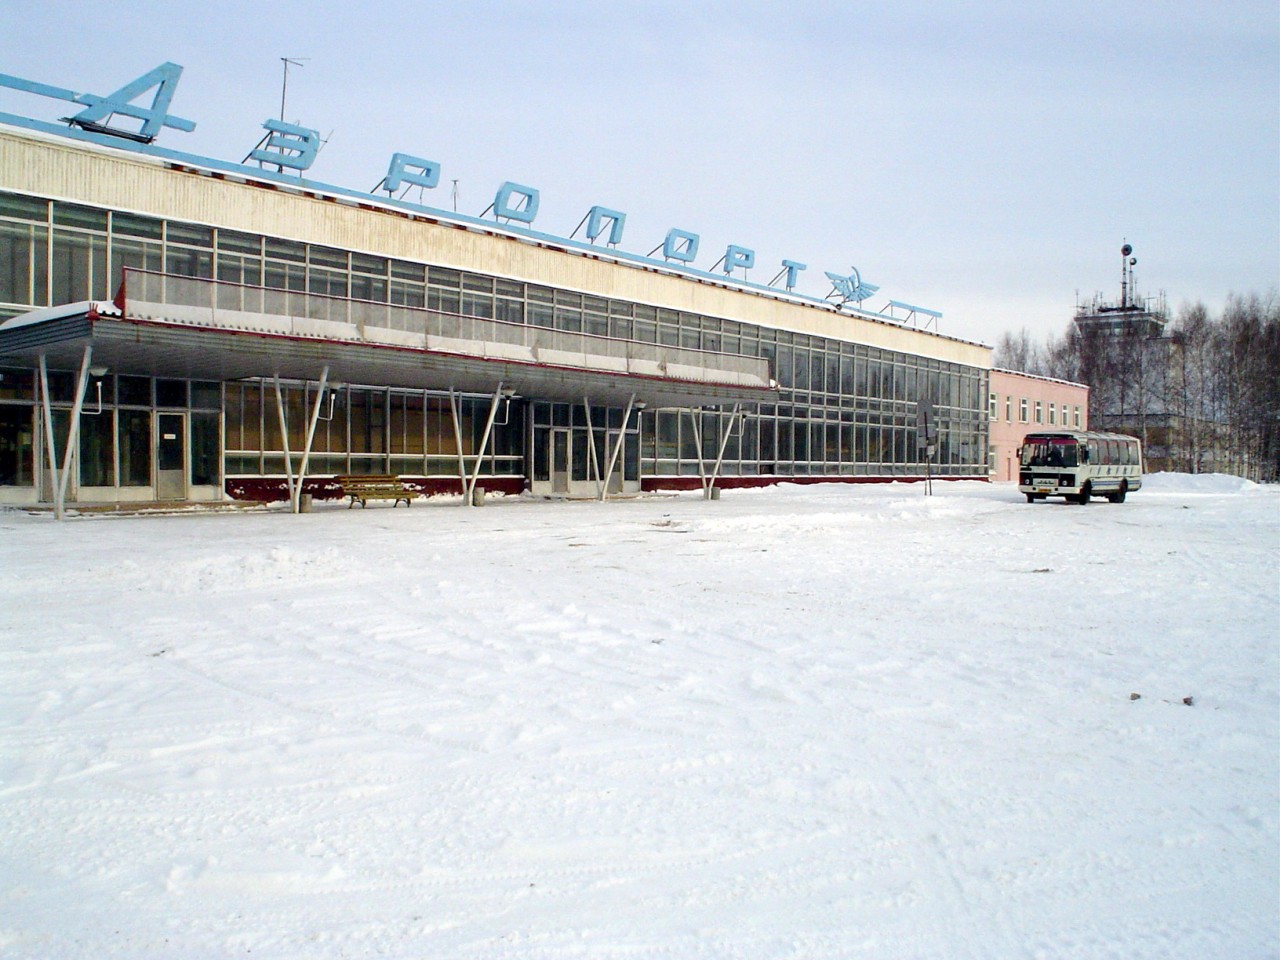 аэропорт киров